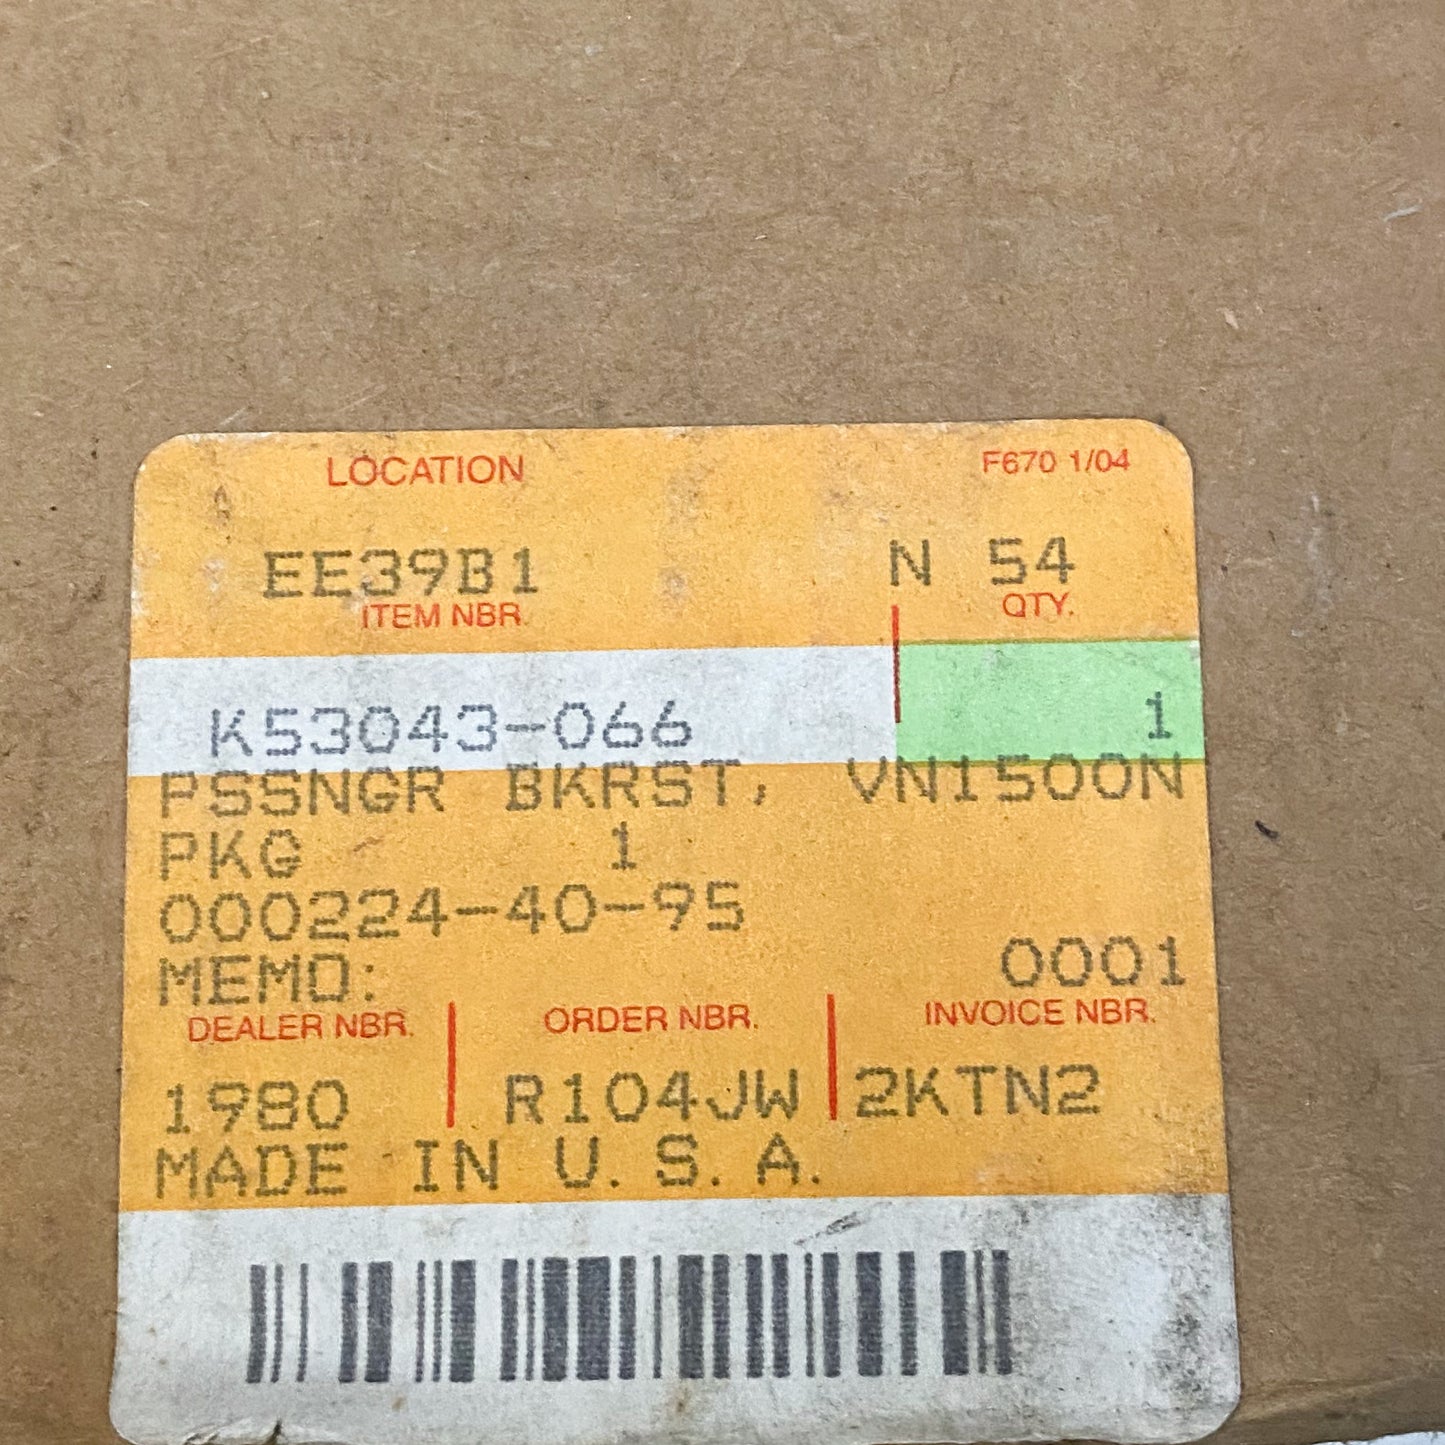 Kawasaki VN1500N Passenger Backrest K53043-066